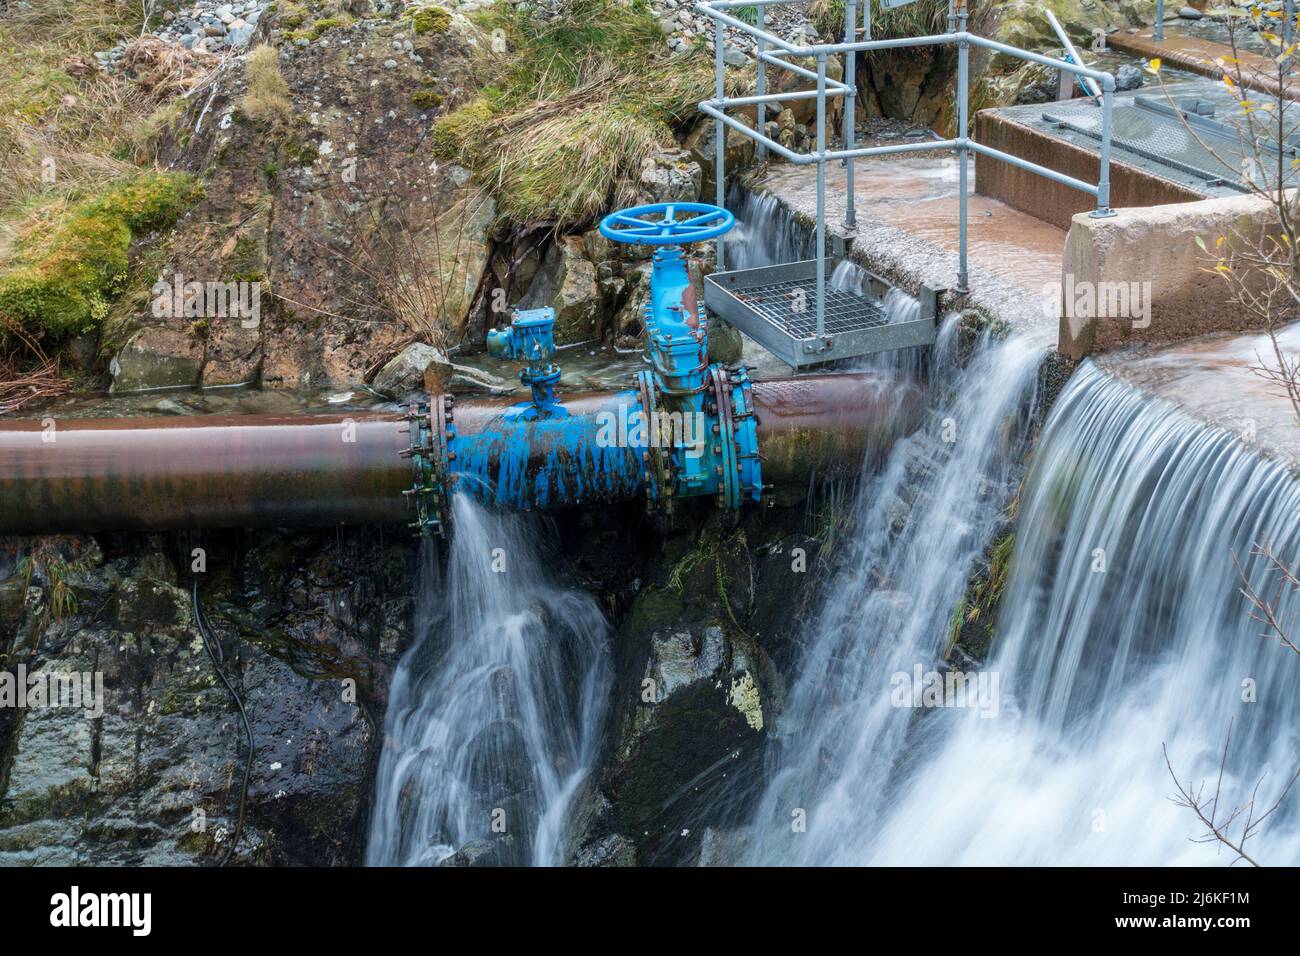 Fuga en la tubería de agua y válvula de compuerta en la toma de agua de la planta hidroeléctrica, Glenridding, Cumbria, Inglaterra, Reino Unido Foto de stock